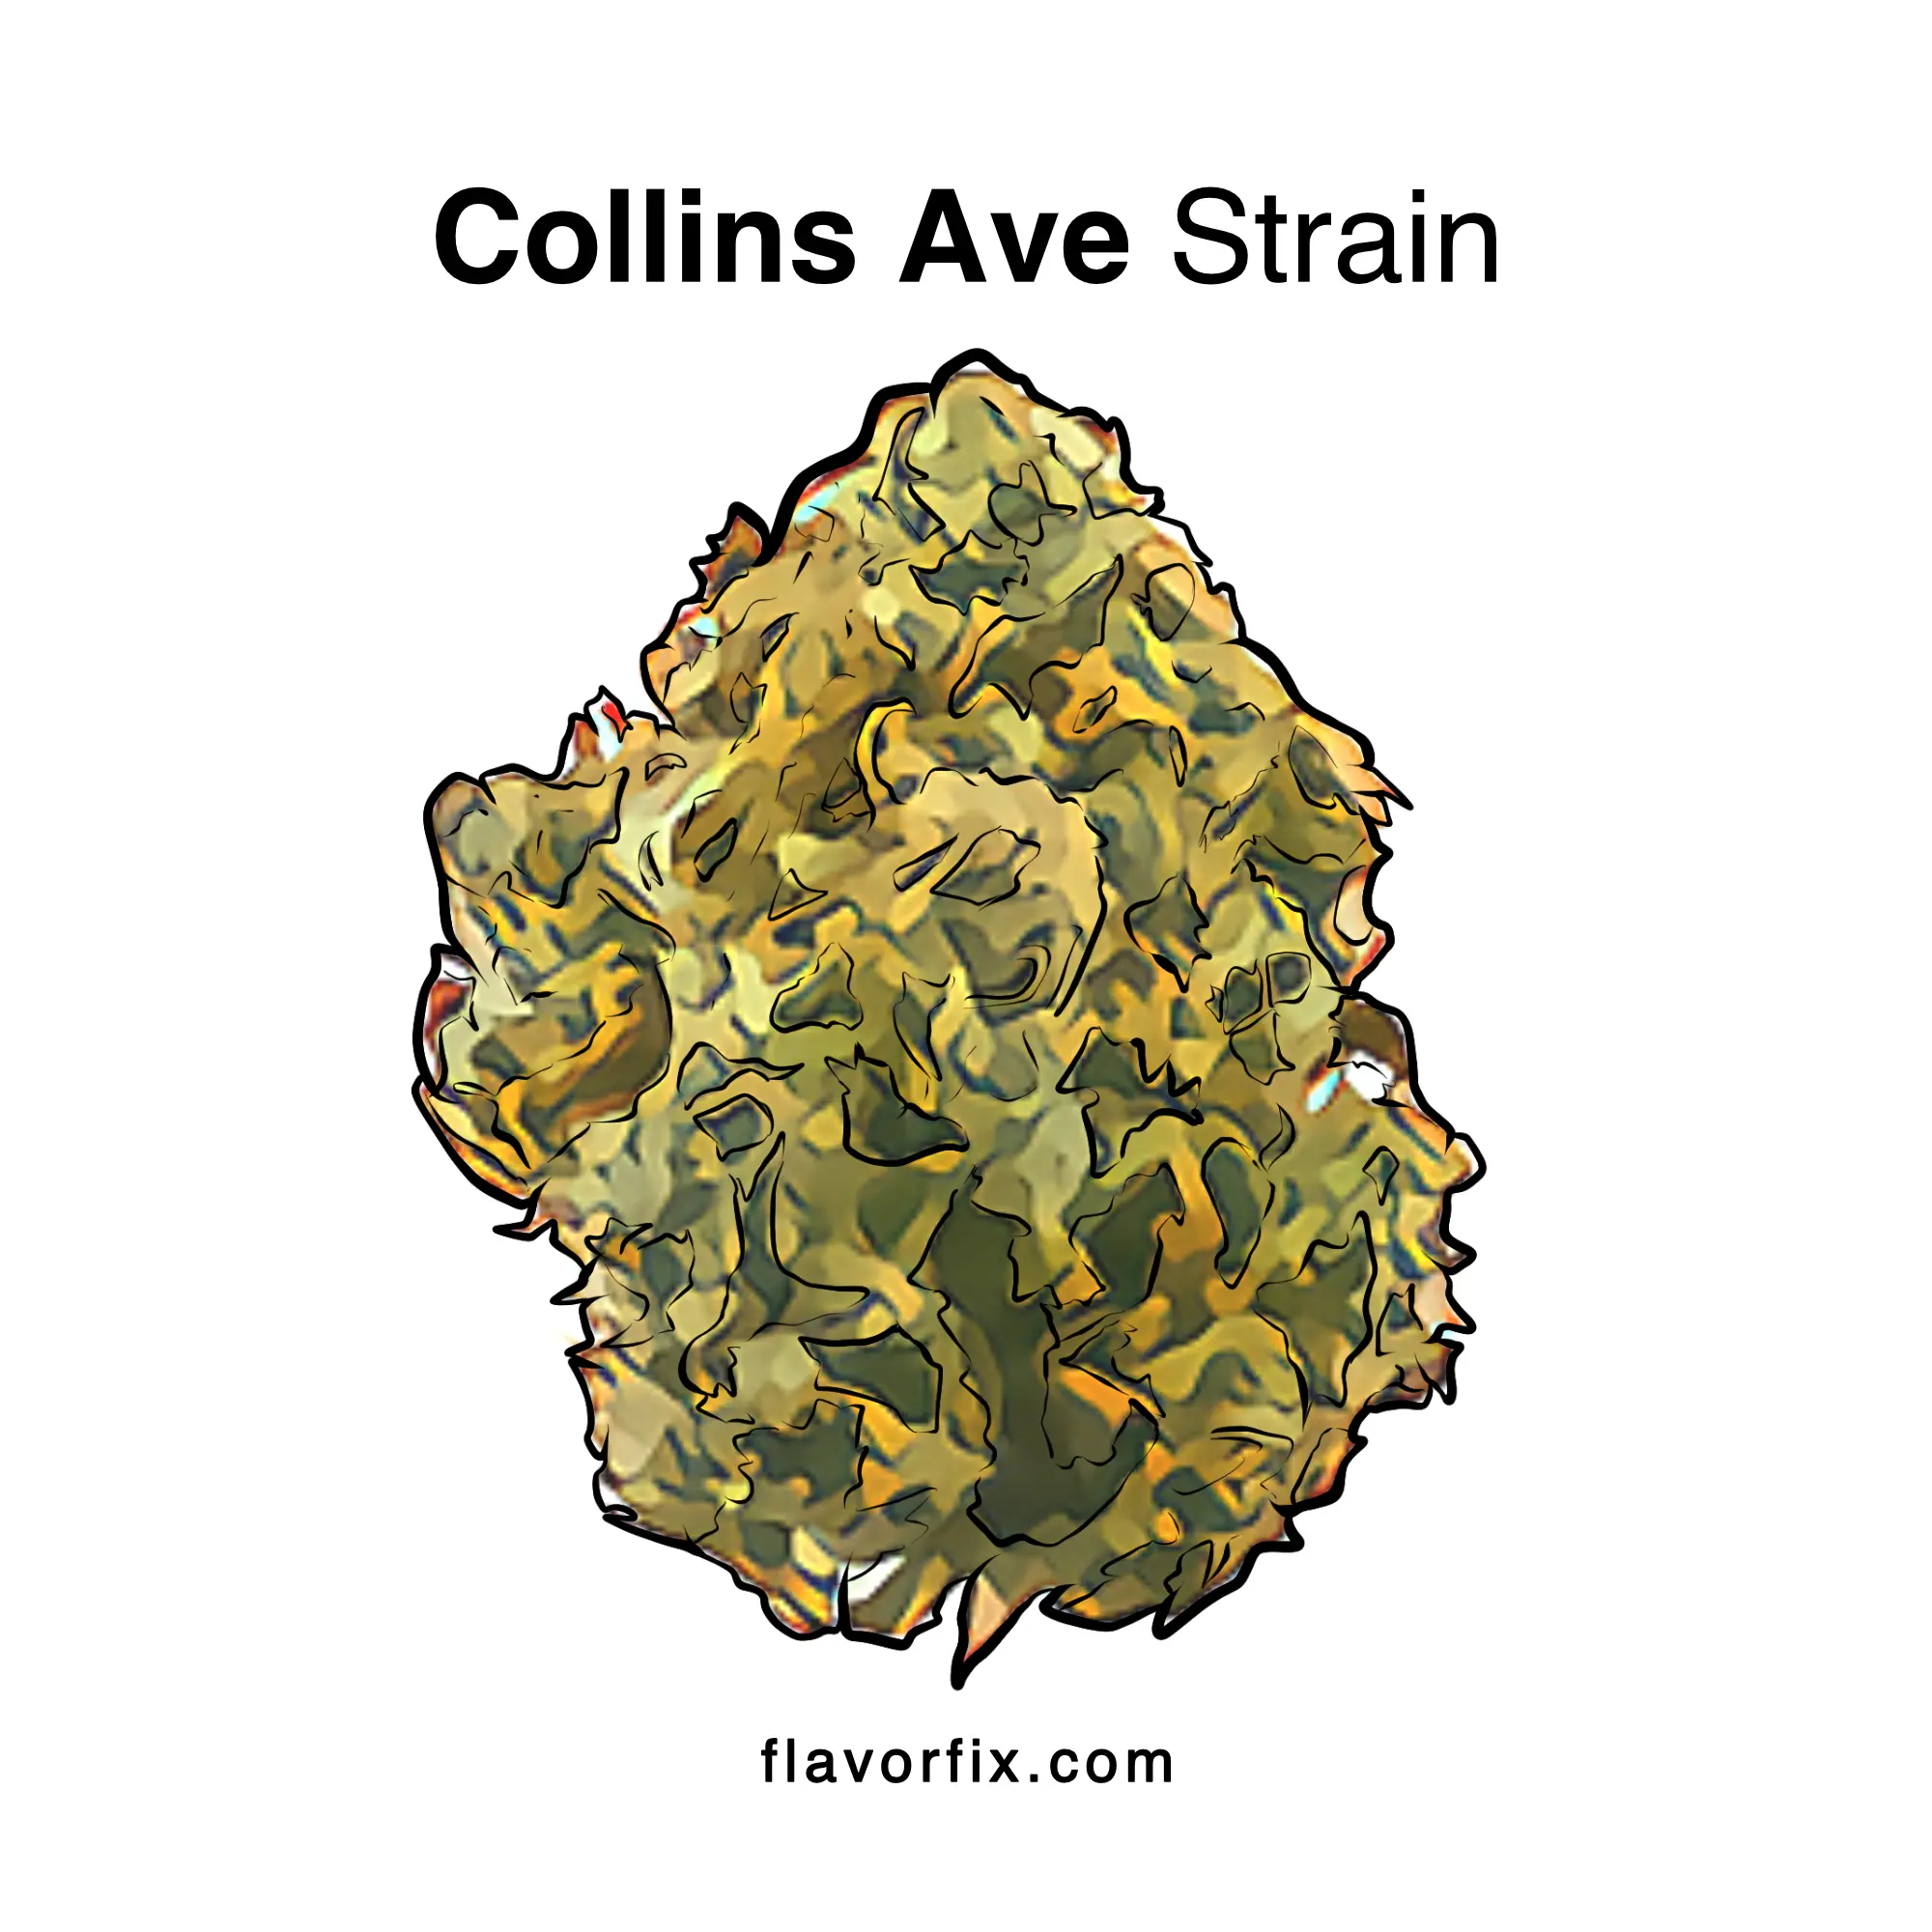 Collins Ave Strain